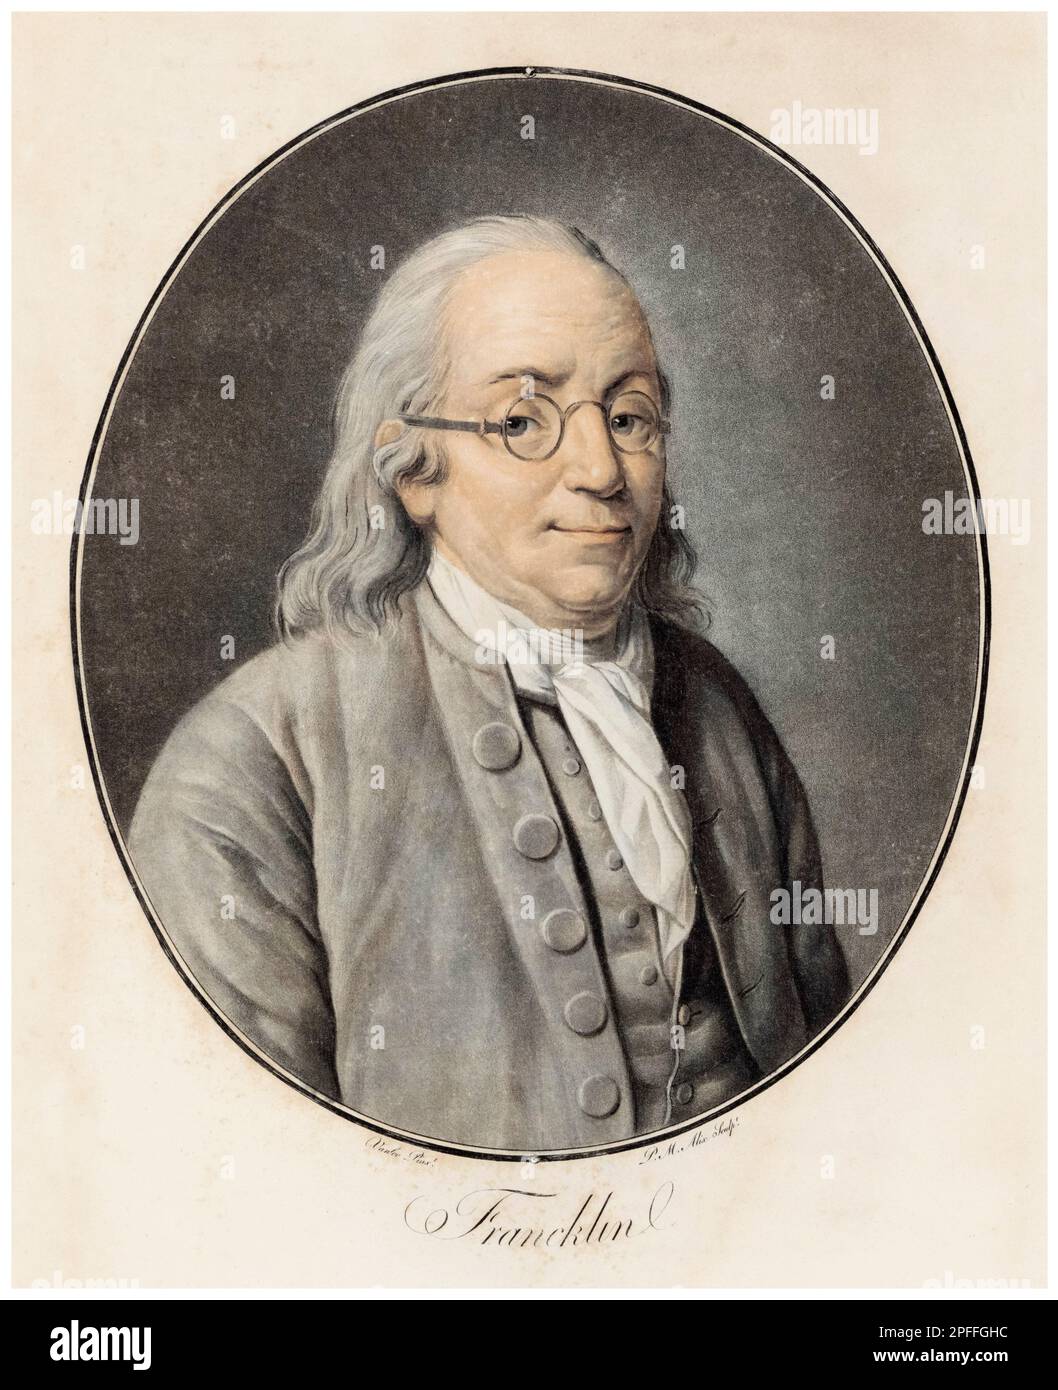 Benjamin Franklin (1706-1790), écrivain, scientifique, inventeur, et homme d'état. Un des Pères fondateurs des États-Unis, portrait imprimé par Pierre Michel Alix d'après Louis Michel van Loo, 1793-1795 Banque D'Images